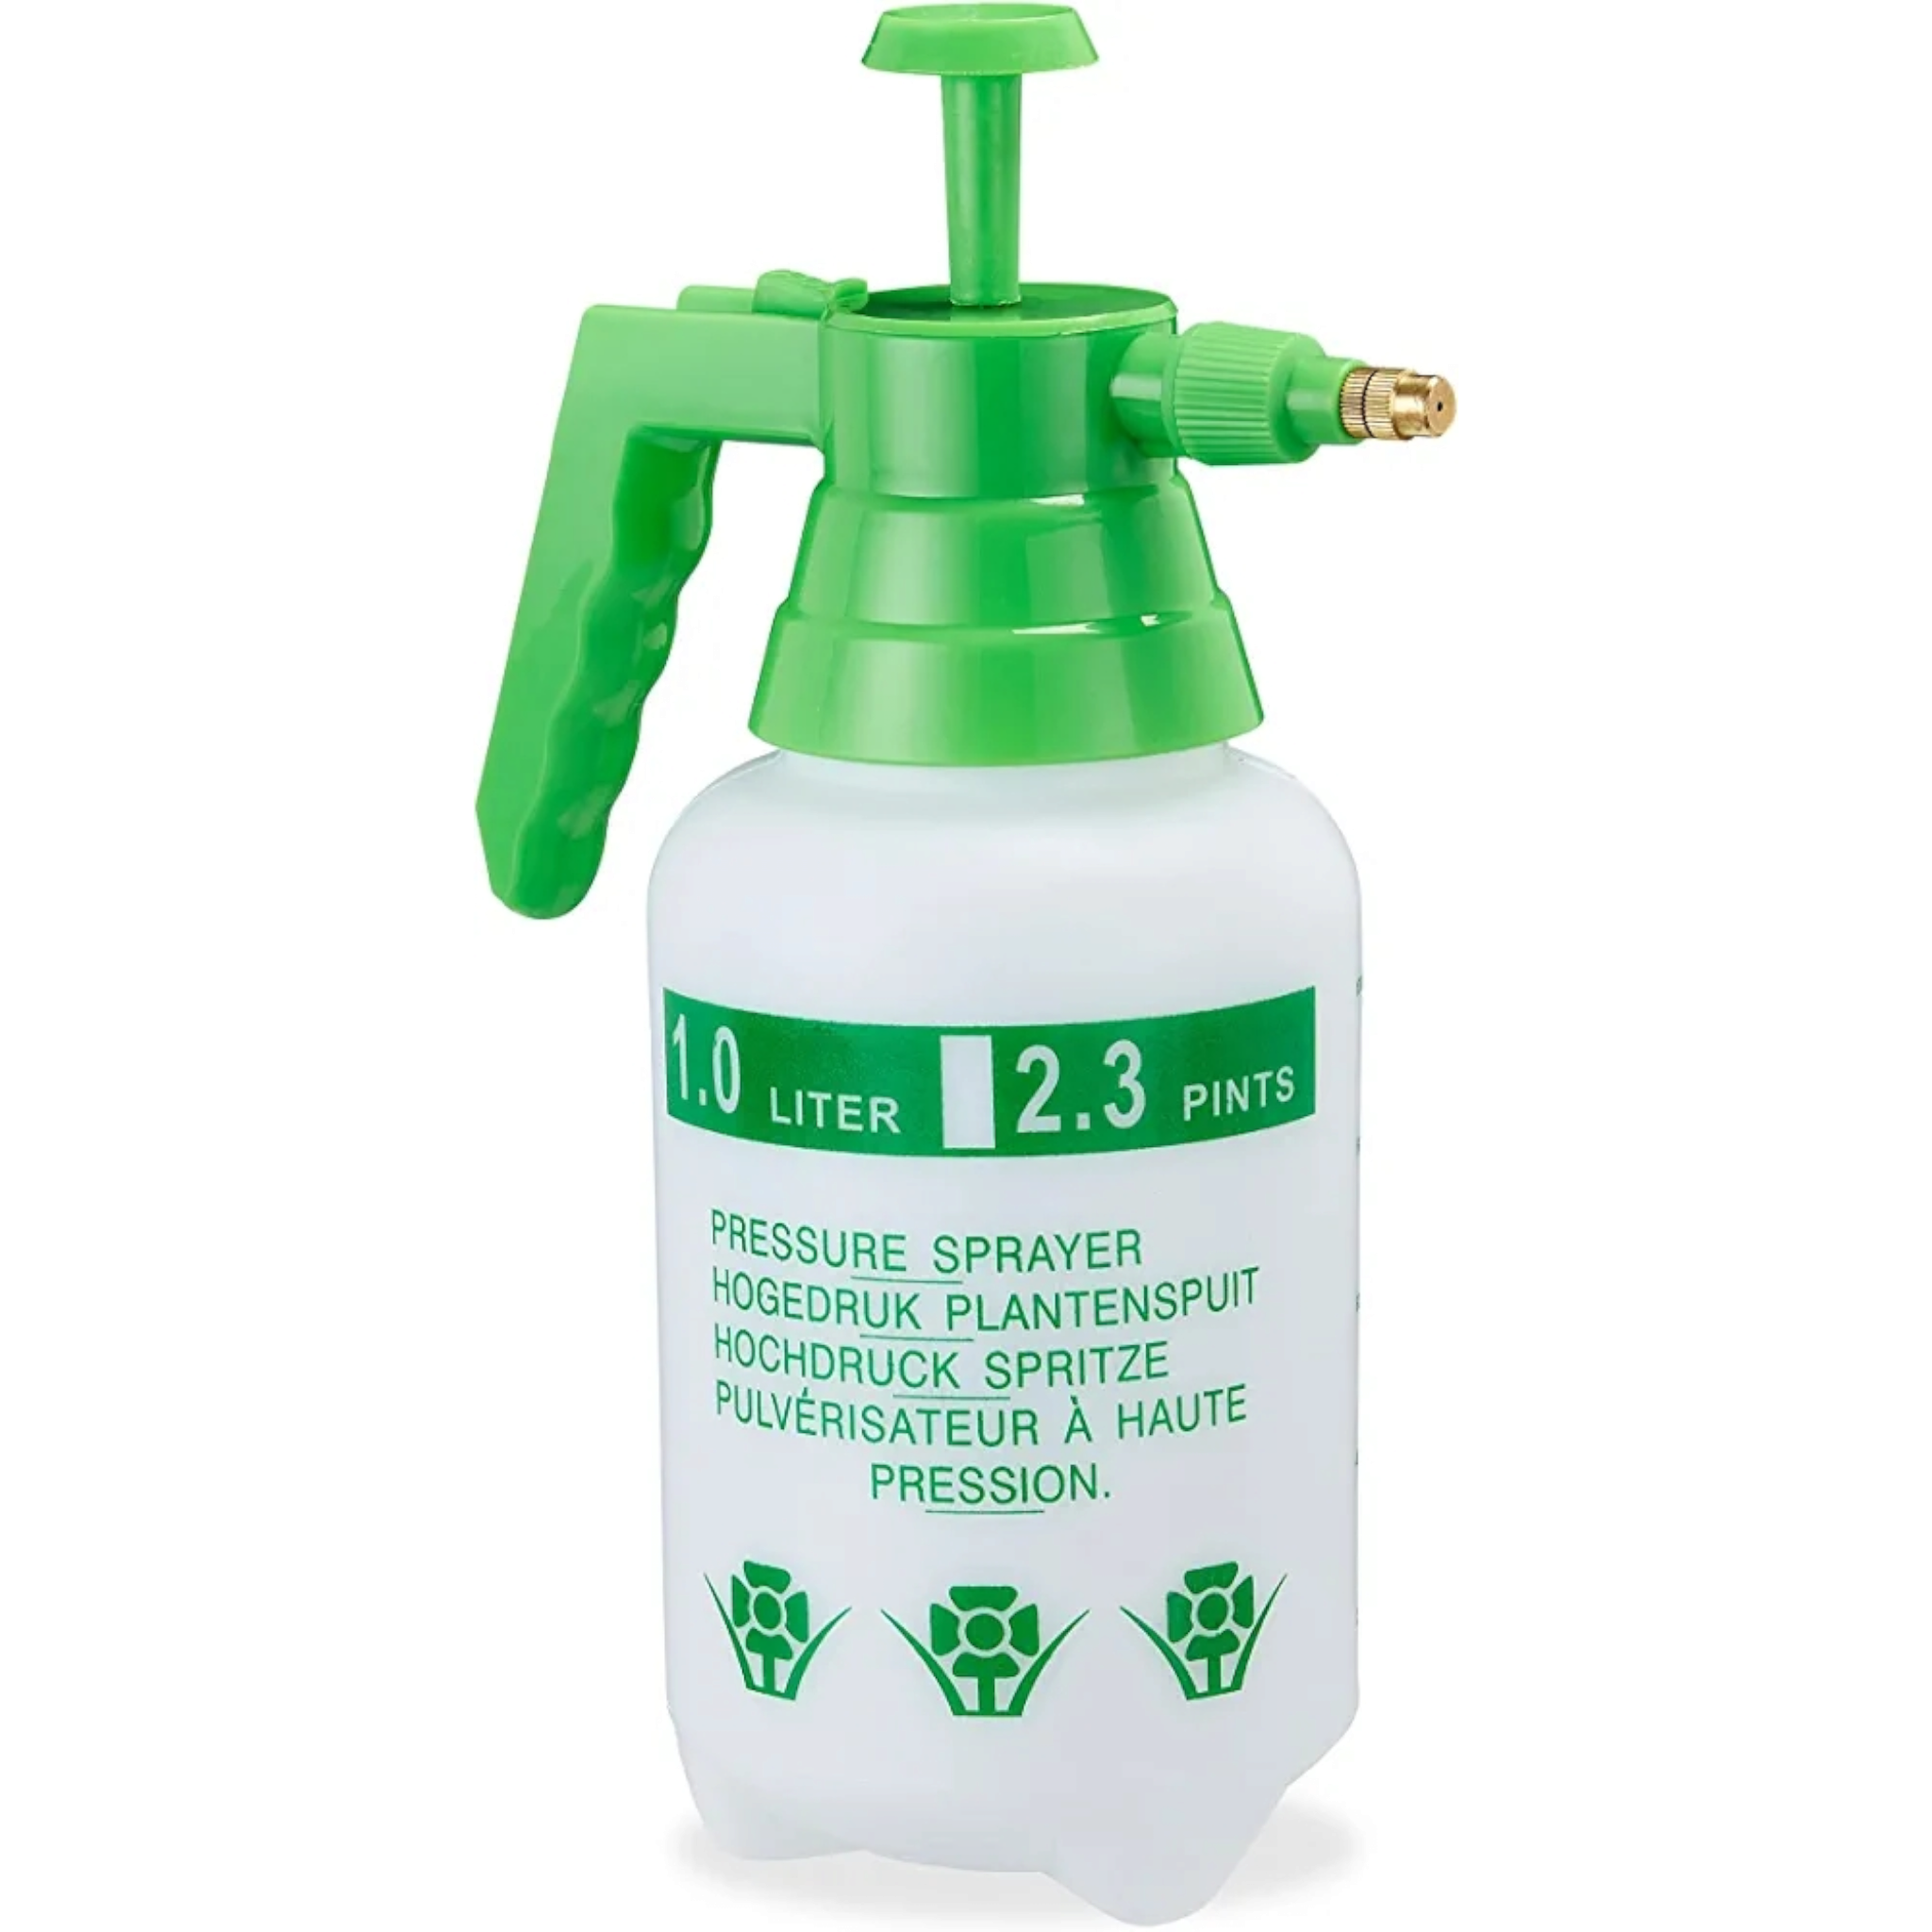 2L Garden Pump Pressure Sprayer Bottle